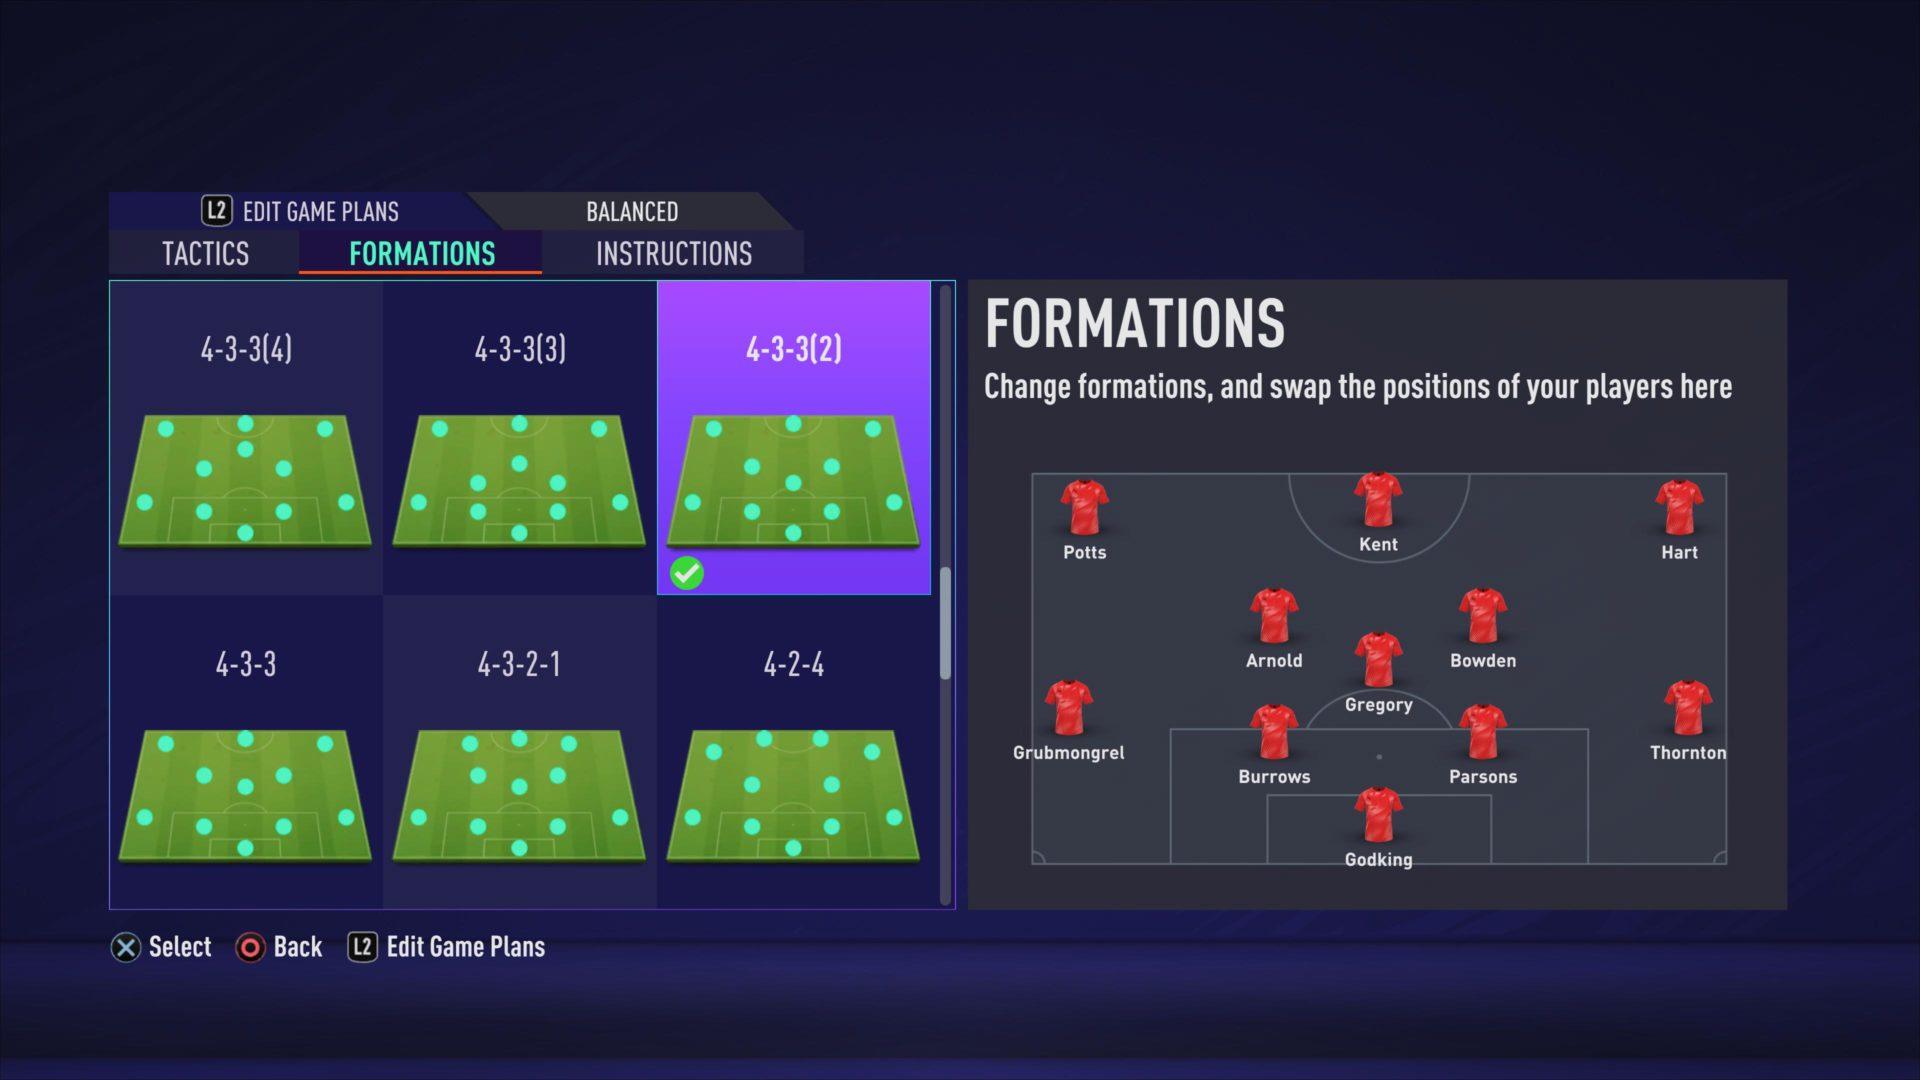 FIFA 21 Pro Clubs Custom Tactics